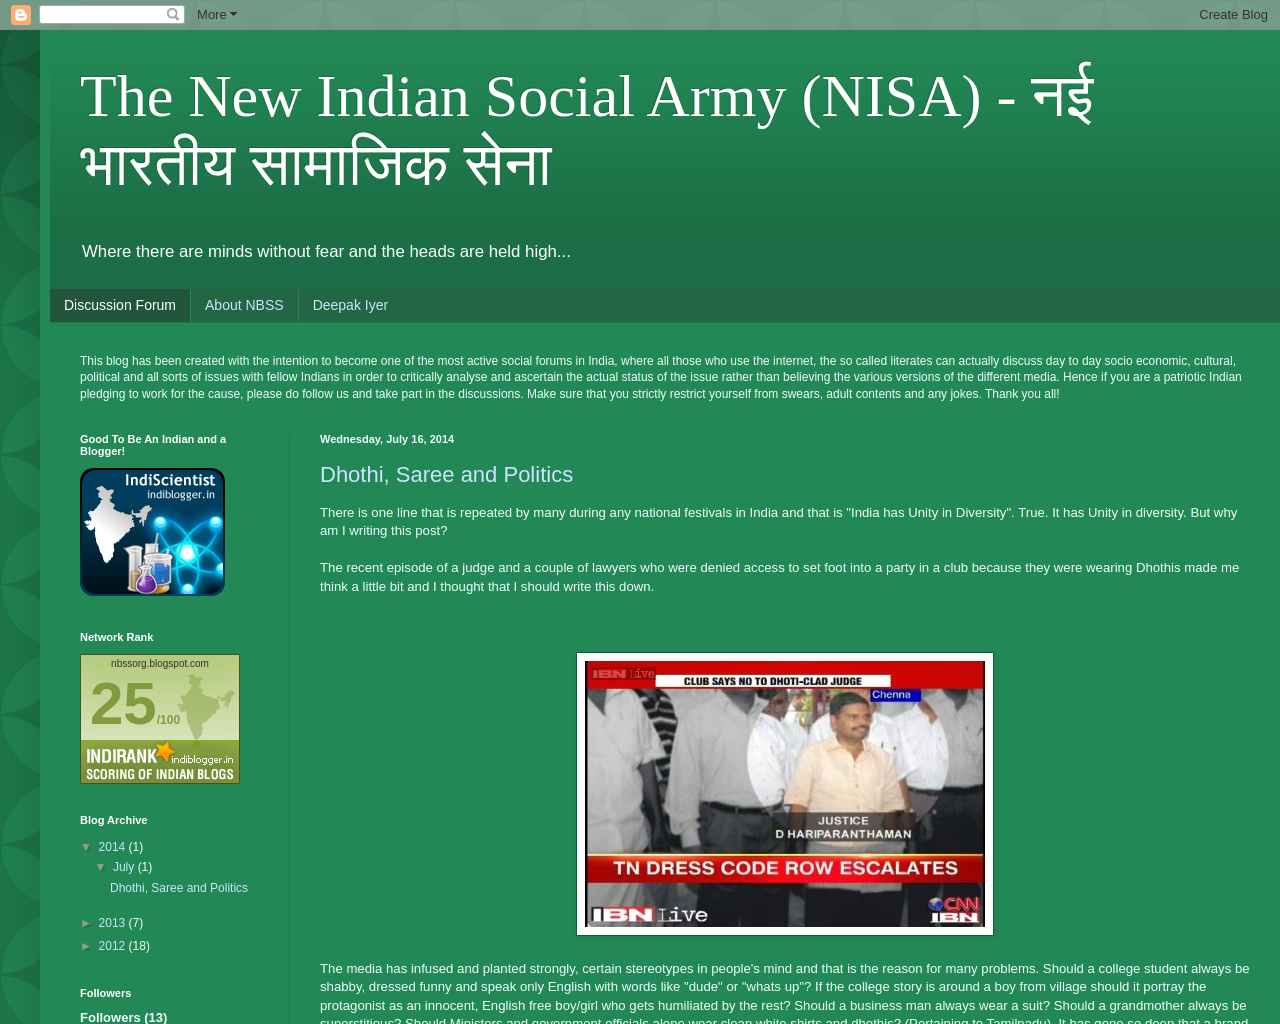 The New Indian Social Army - नई भारतीय सामाजिक सेना (NBSS)